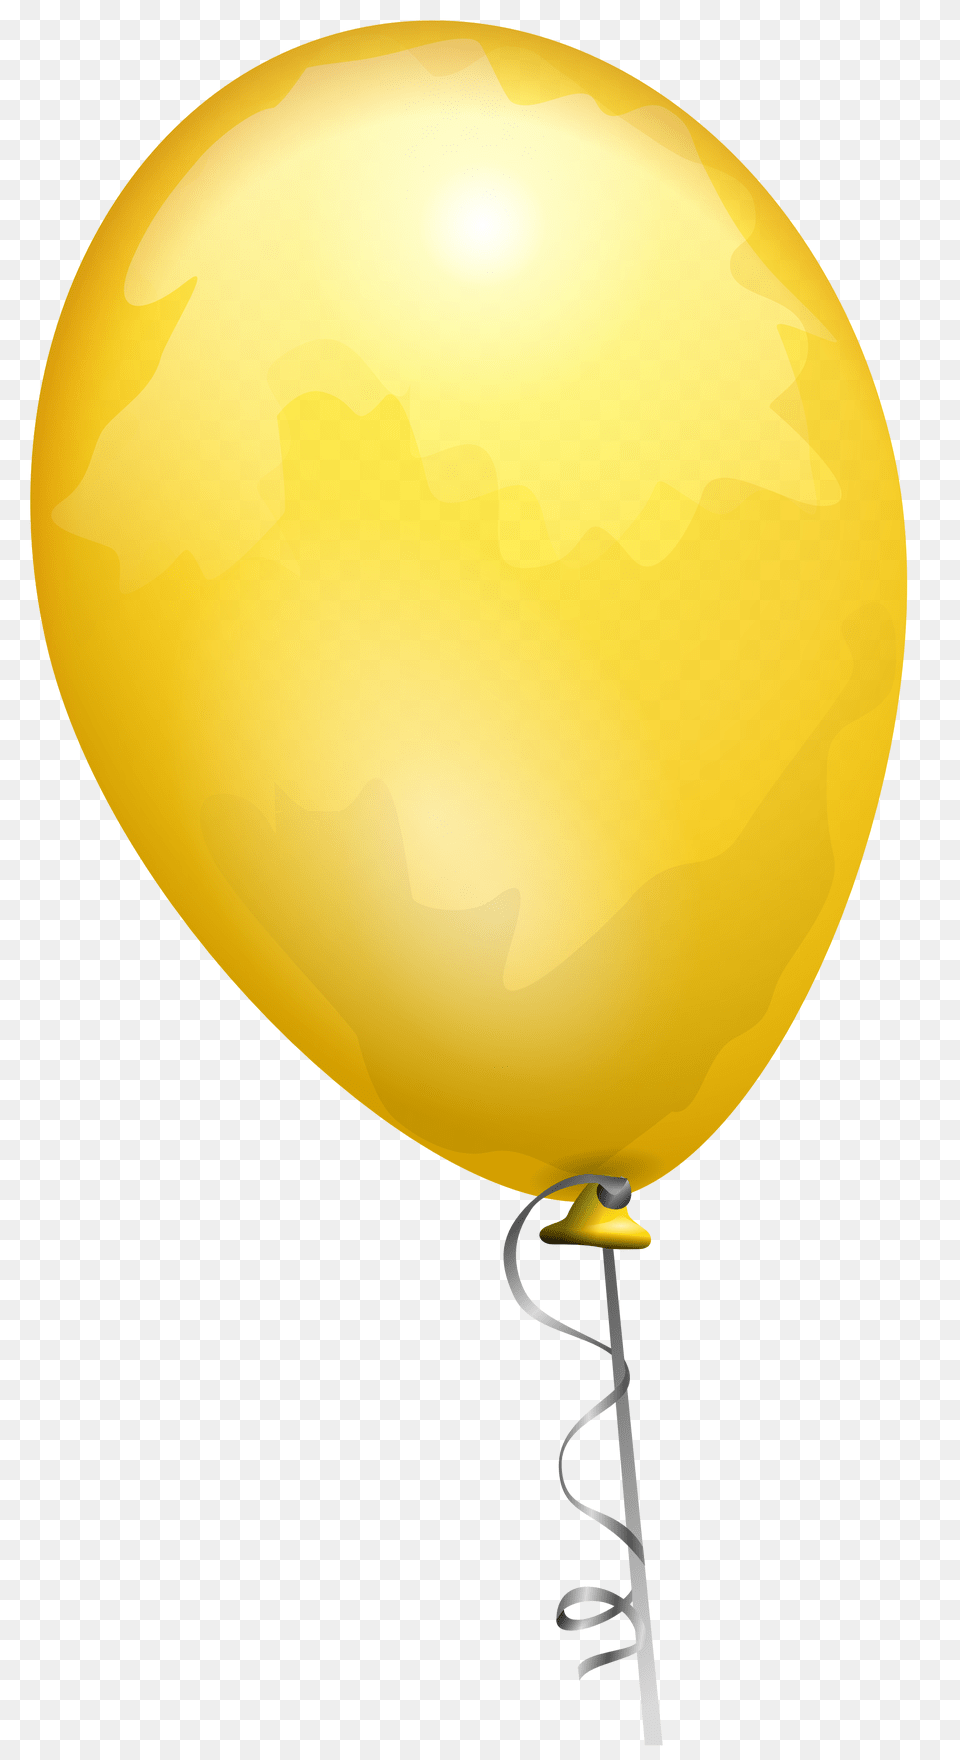 Balloon, Helmet Png Image